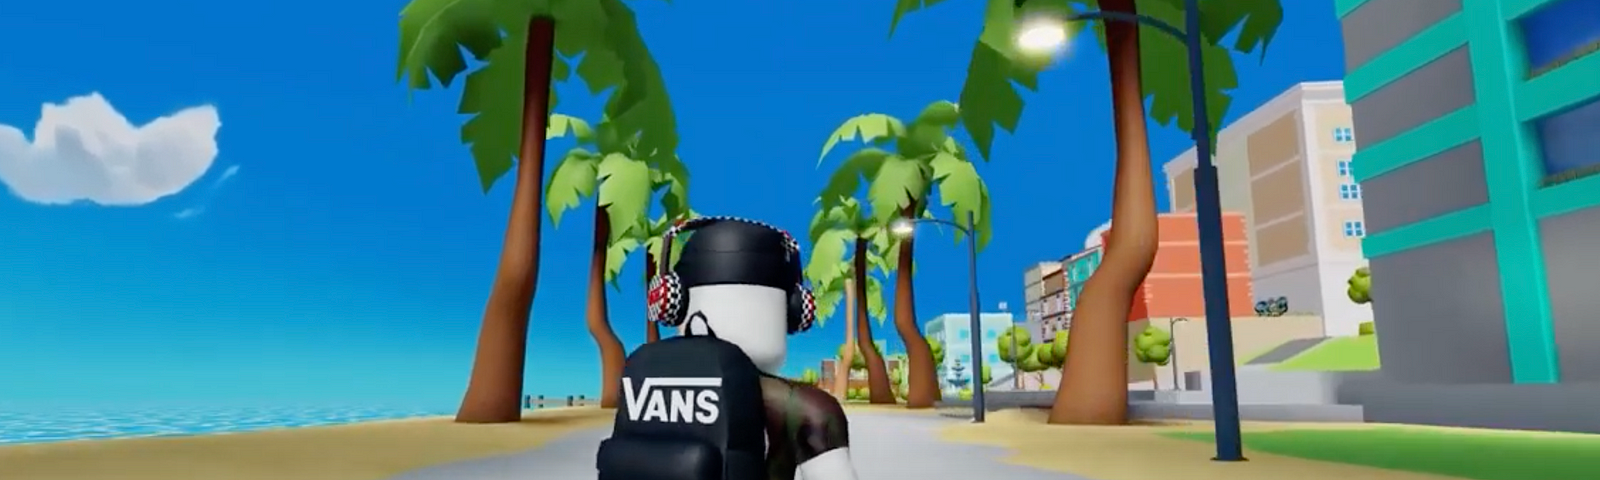 imagem de dentro do Roblox com personagem usando boné, fones de ouvido, mochila e tênis da marca Vans, andando de skate em uma rua com palmeiras ao redor, prédios de um lado e praia do outro